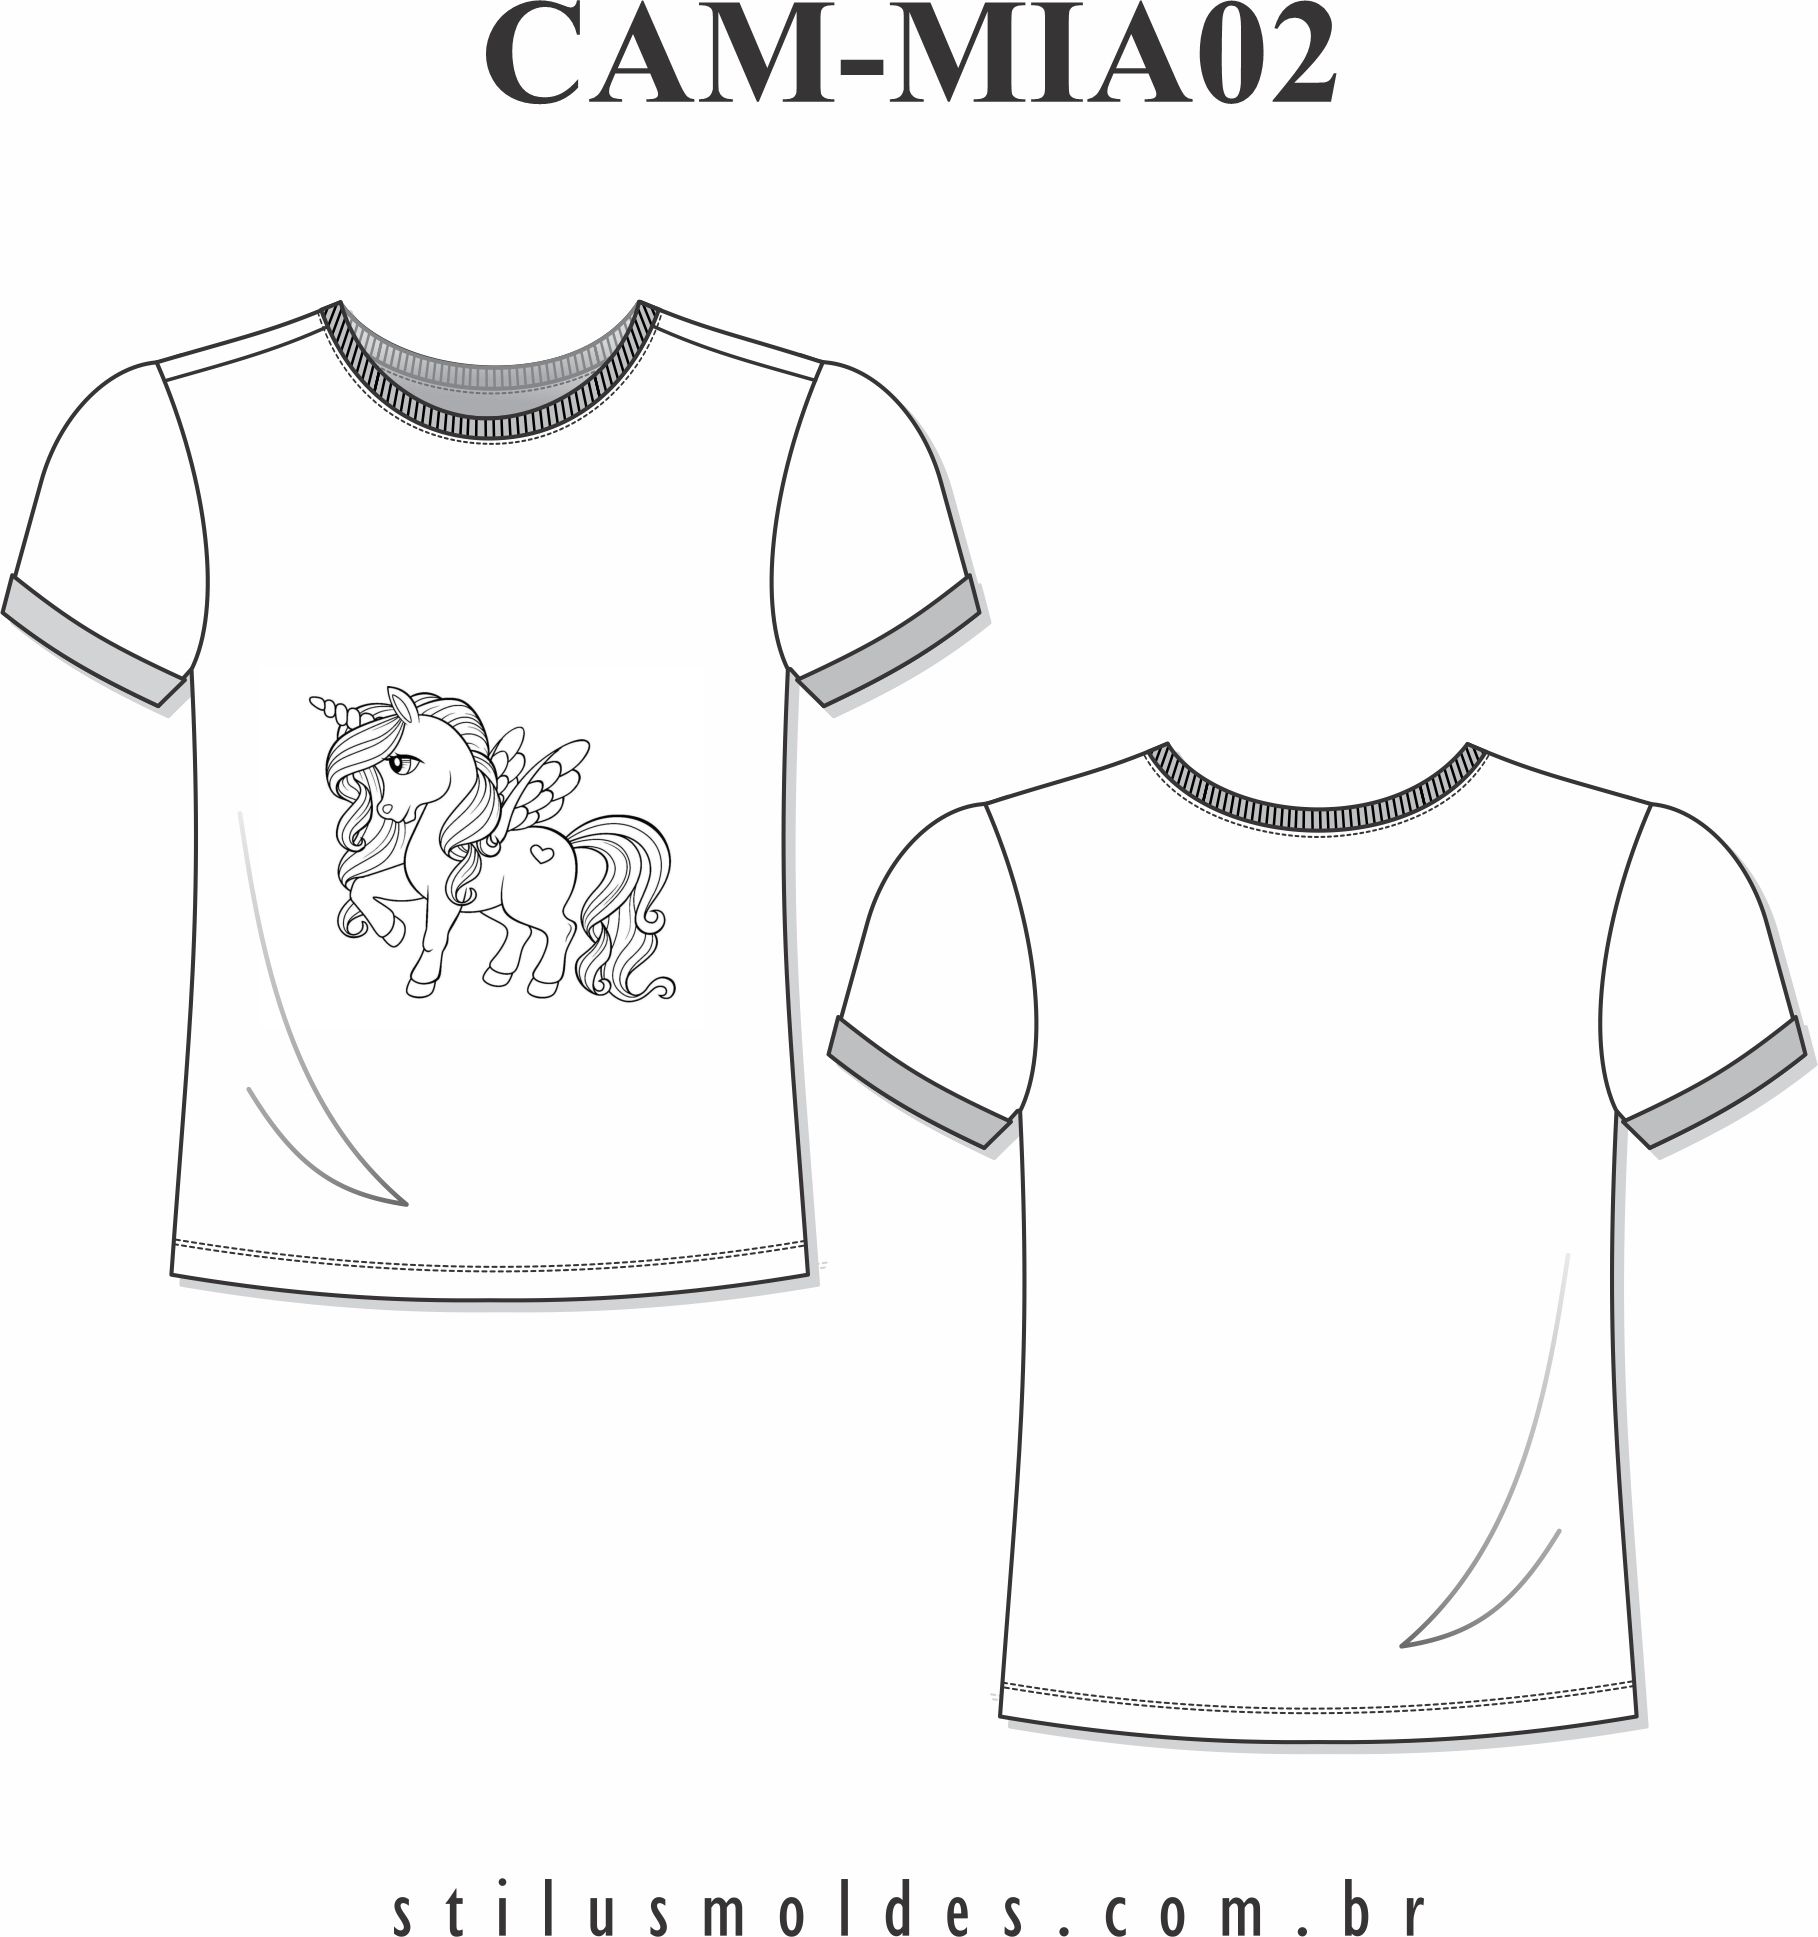 Camiseta infantojuvenil (CAM-MIA02) - Foto 0